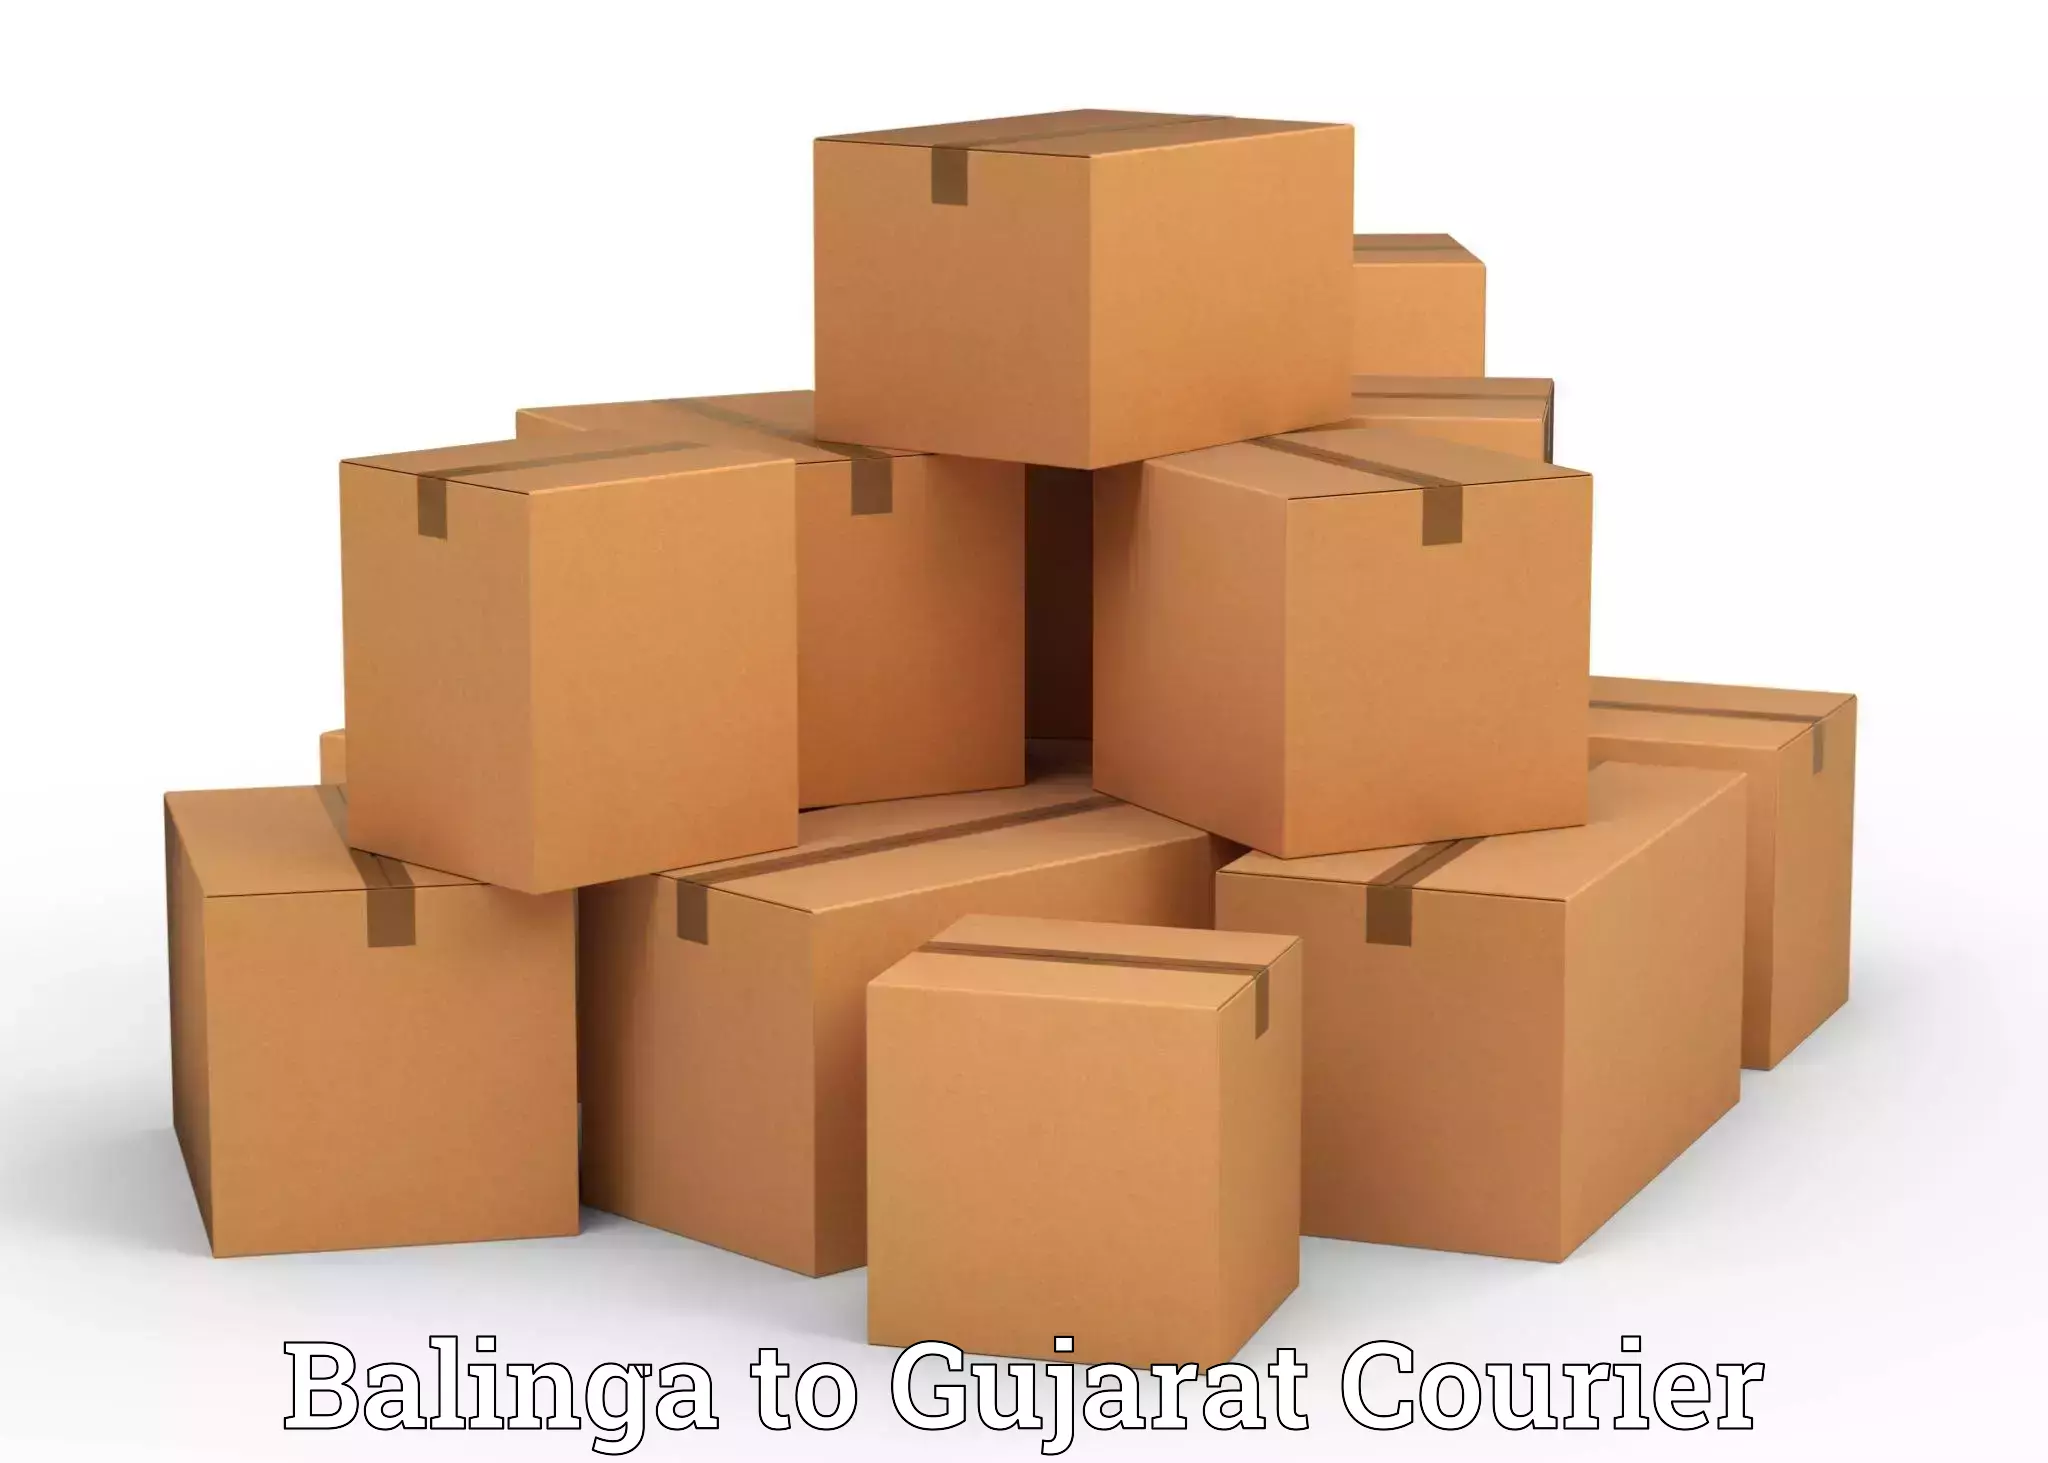 Furniture transport and logistics in Balinga to Vatadara